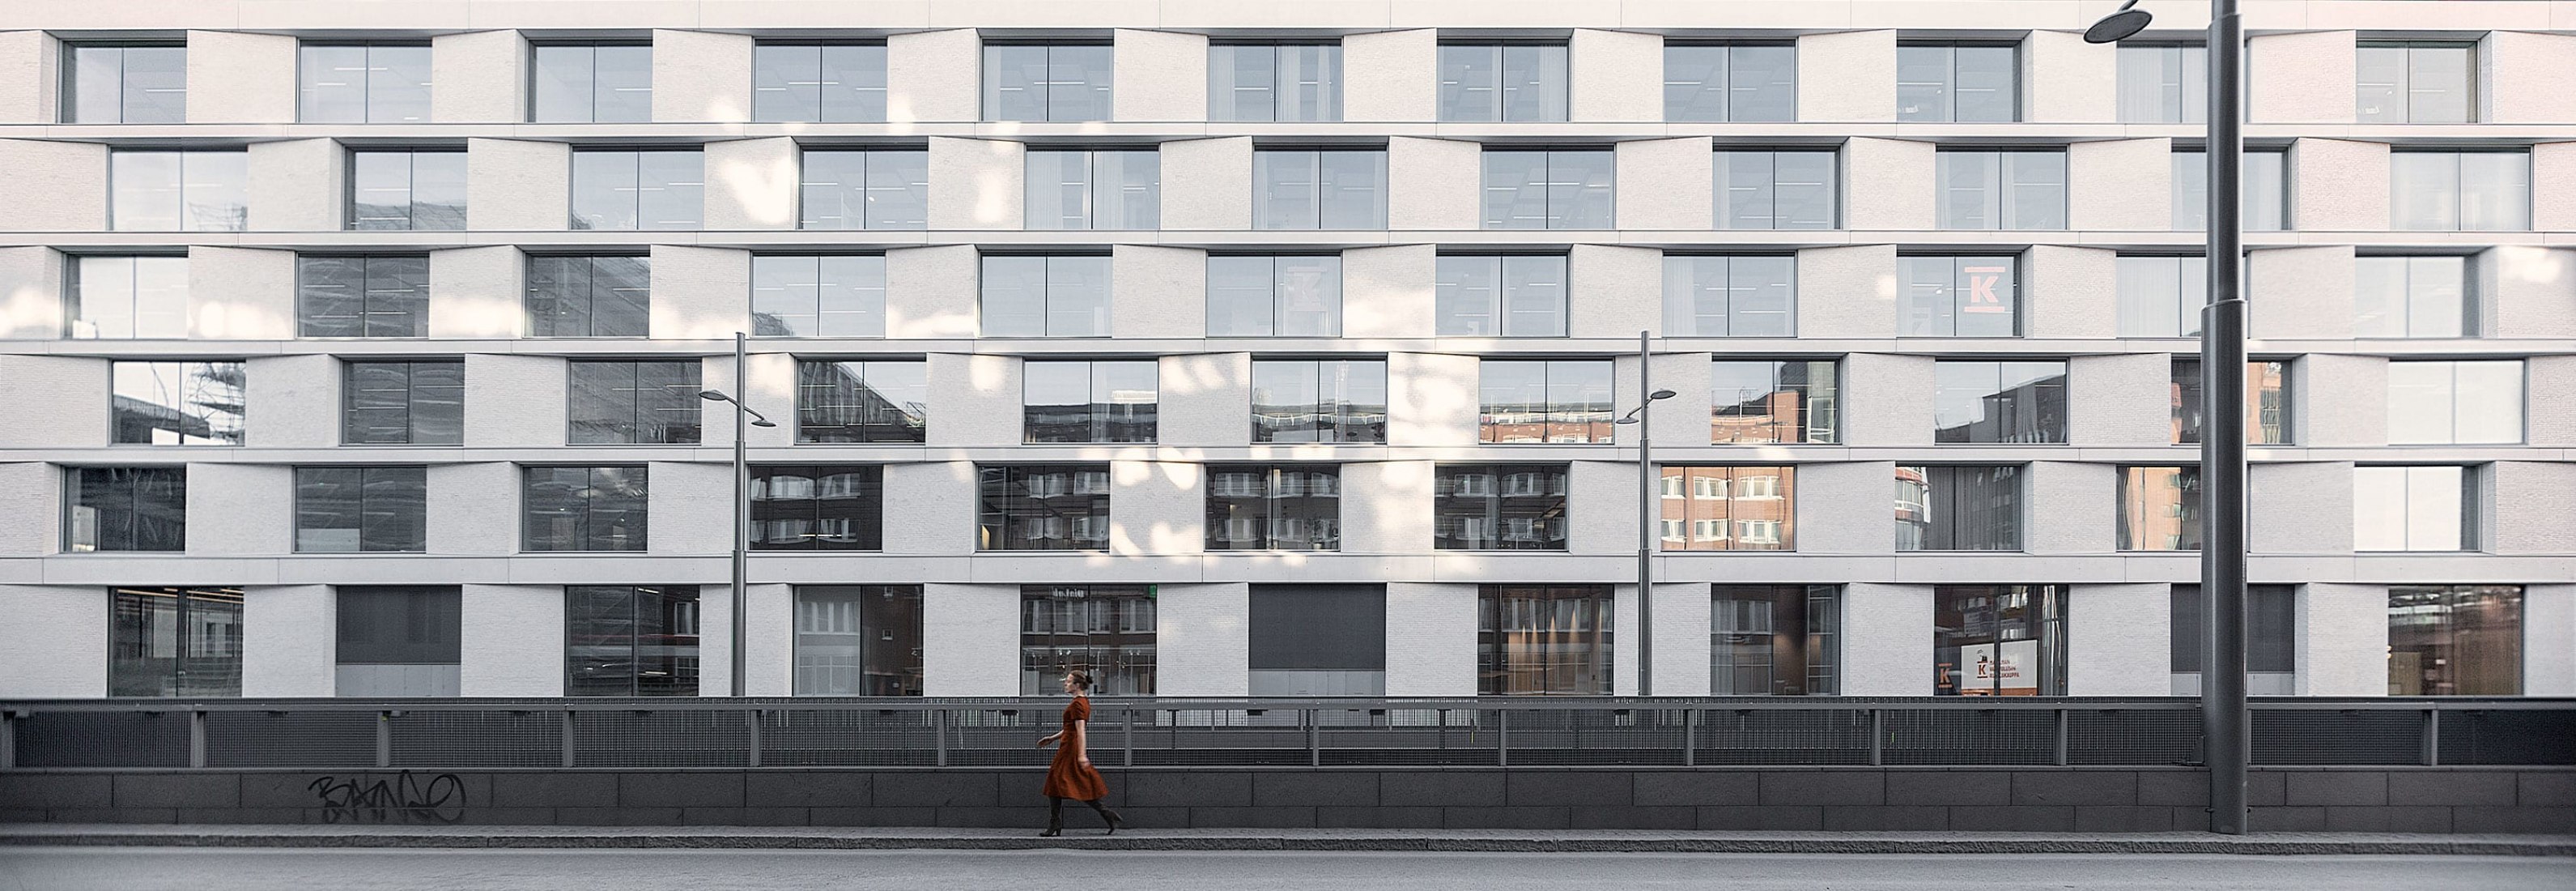 K-Kampus by JKMM Architects. Photograph by Hannu Rytky